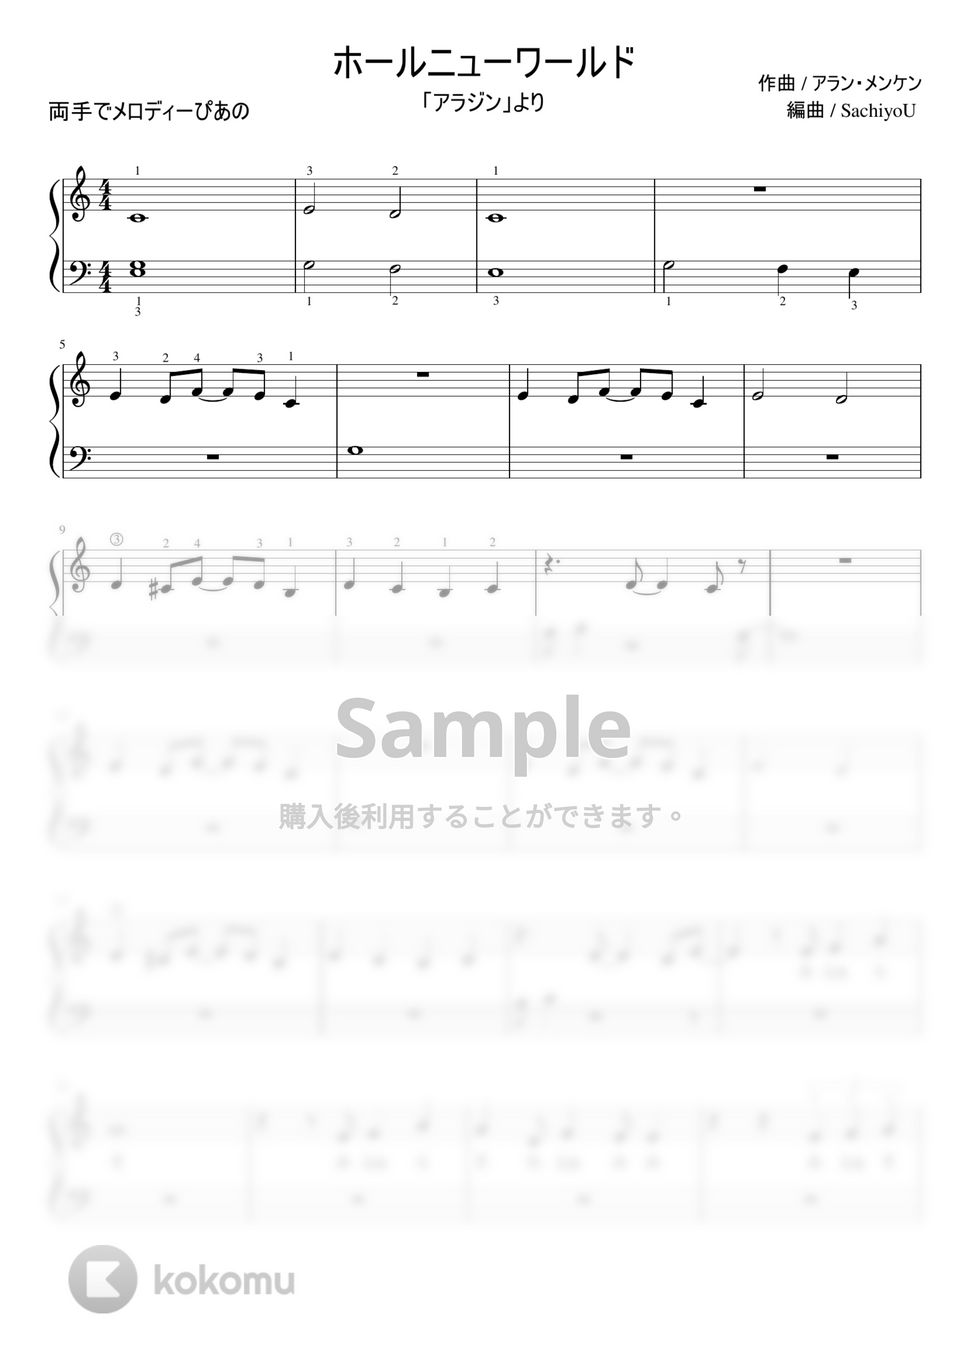 アラン・メンケン - ホールニューワールド (ピアノ / 両手でメロディーぴあの) by SachiyoU